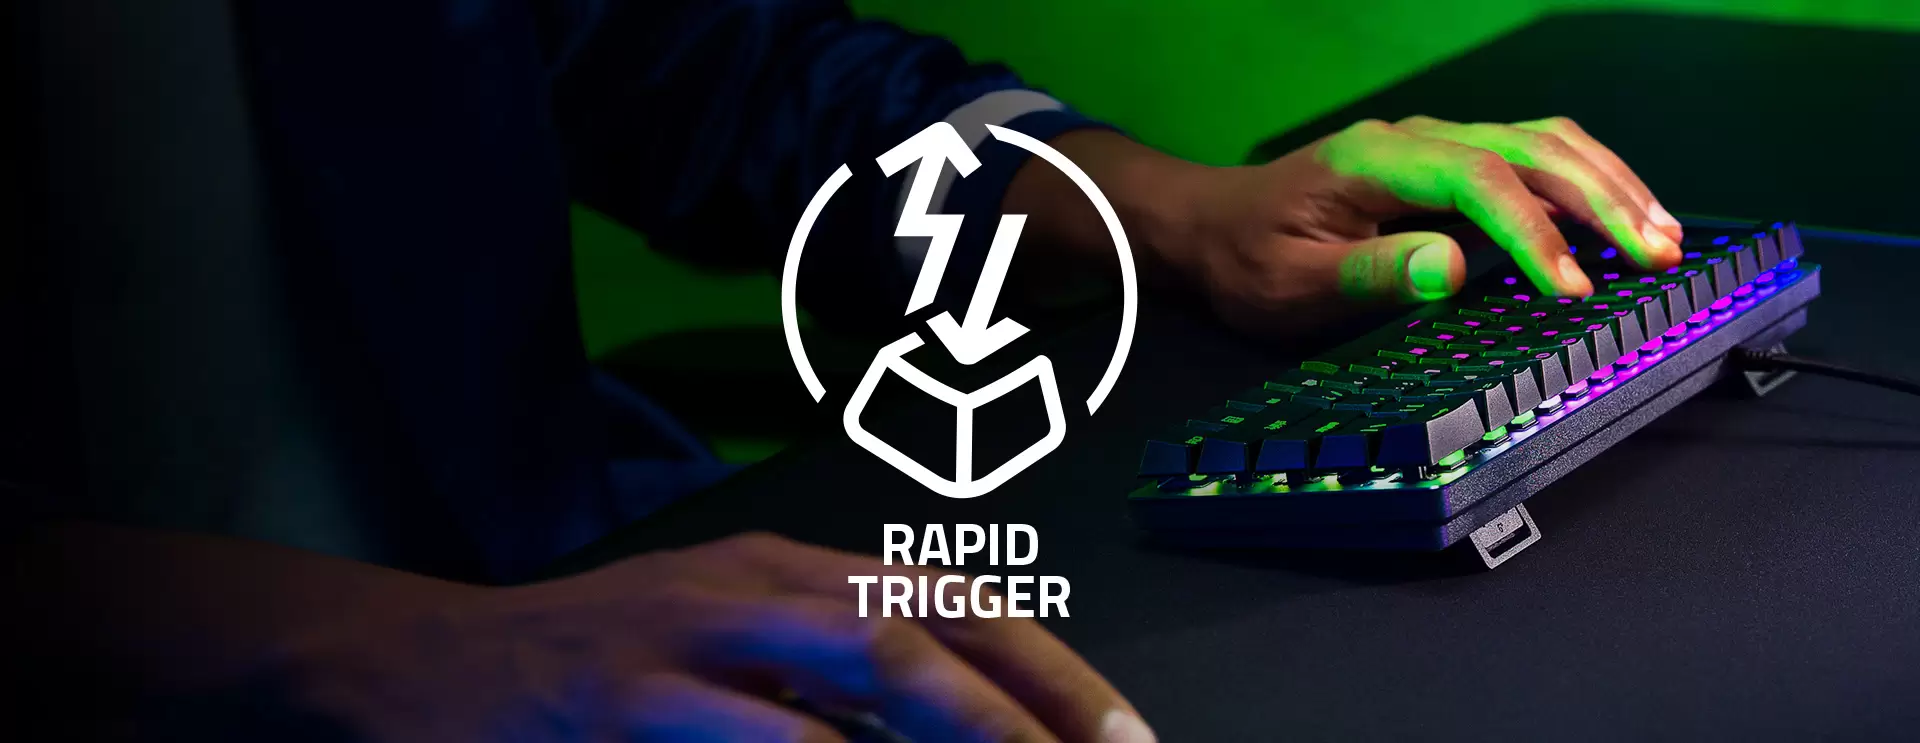 Razer Analog Klavyeler İçin Hızlı Tetik Modu Geldi